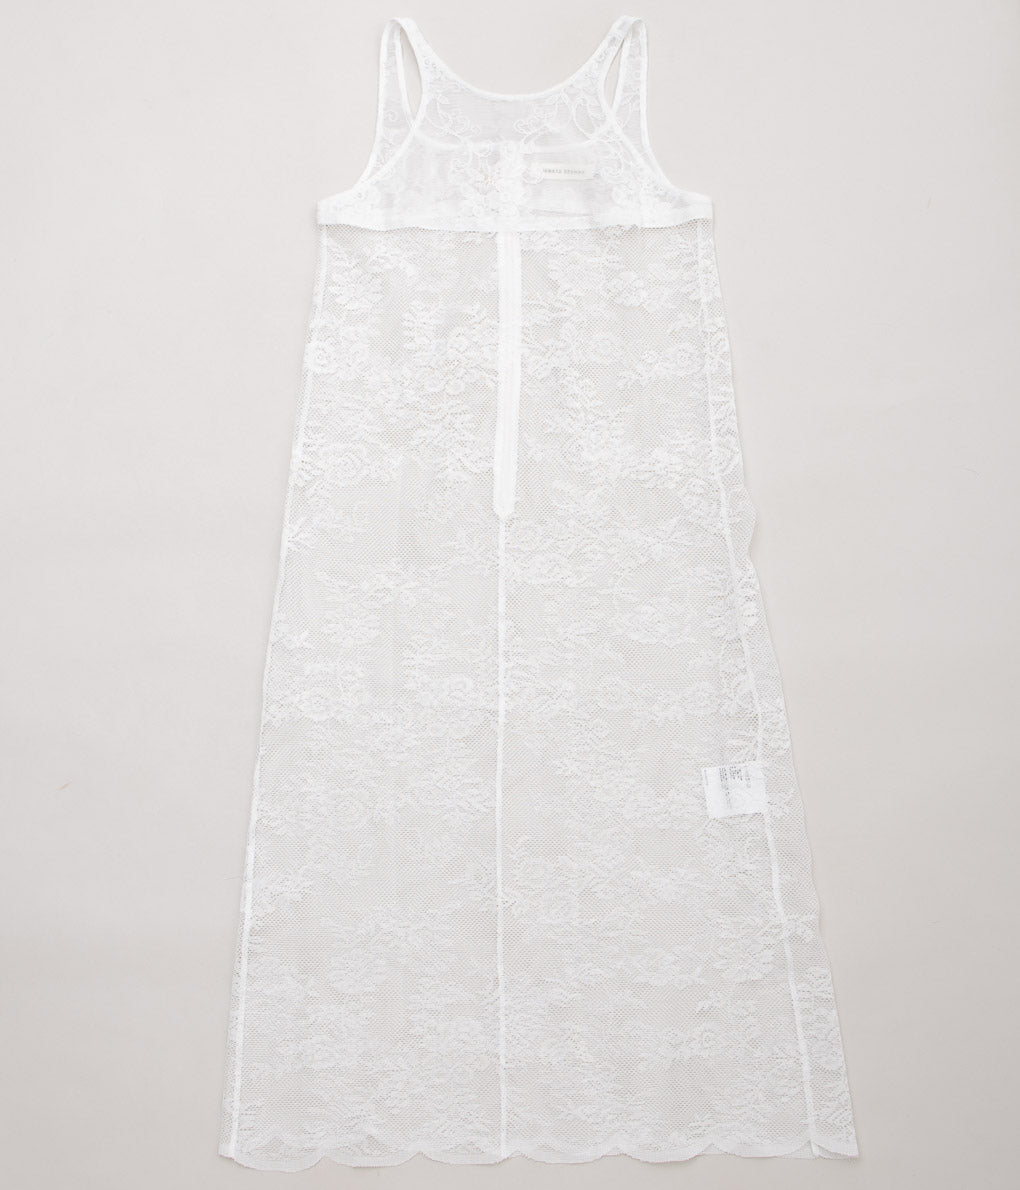 RENATA BRENHA "MERGULHO SLIP DRESS"(OFF WHITE)